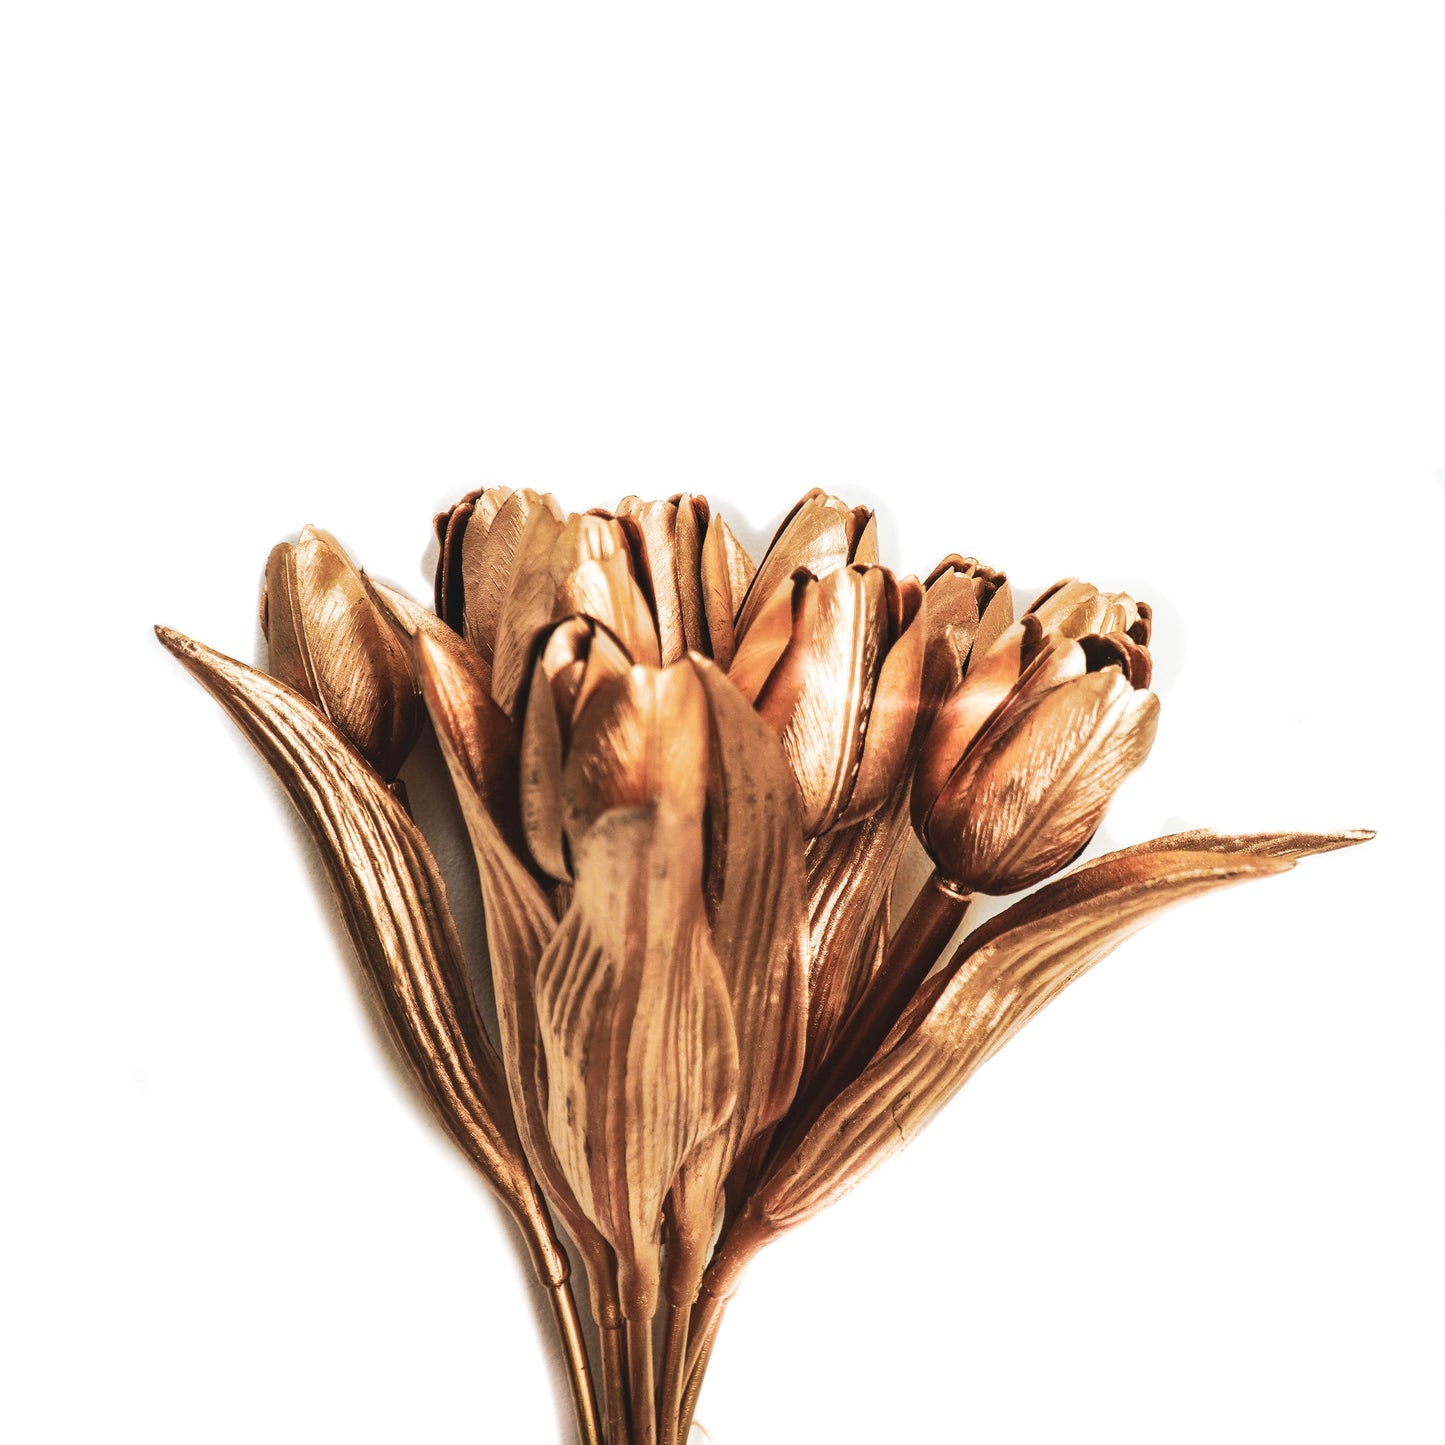 HV 12 Golden Tulips - 20x40 cm - Polysterene